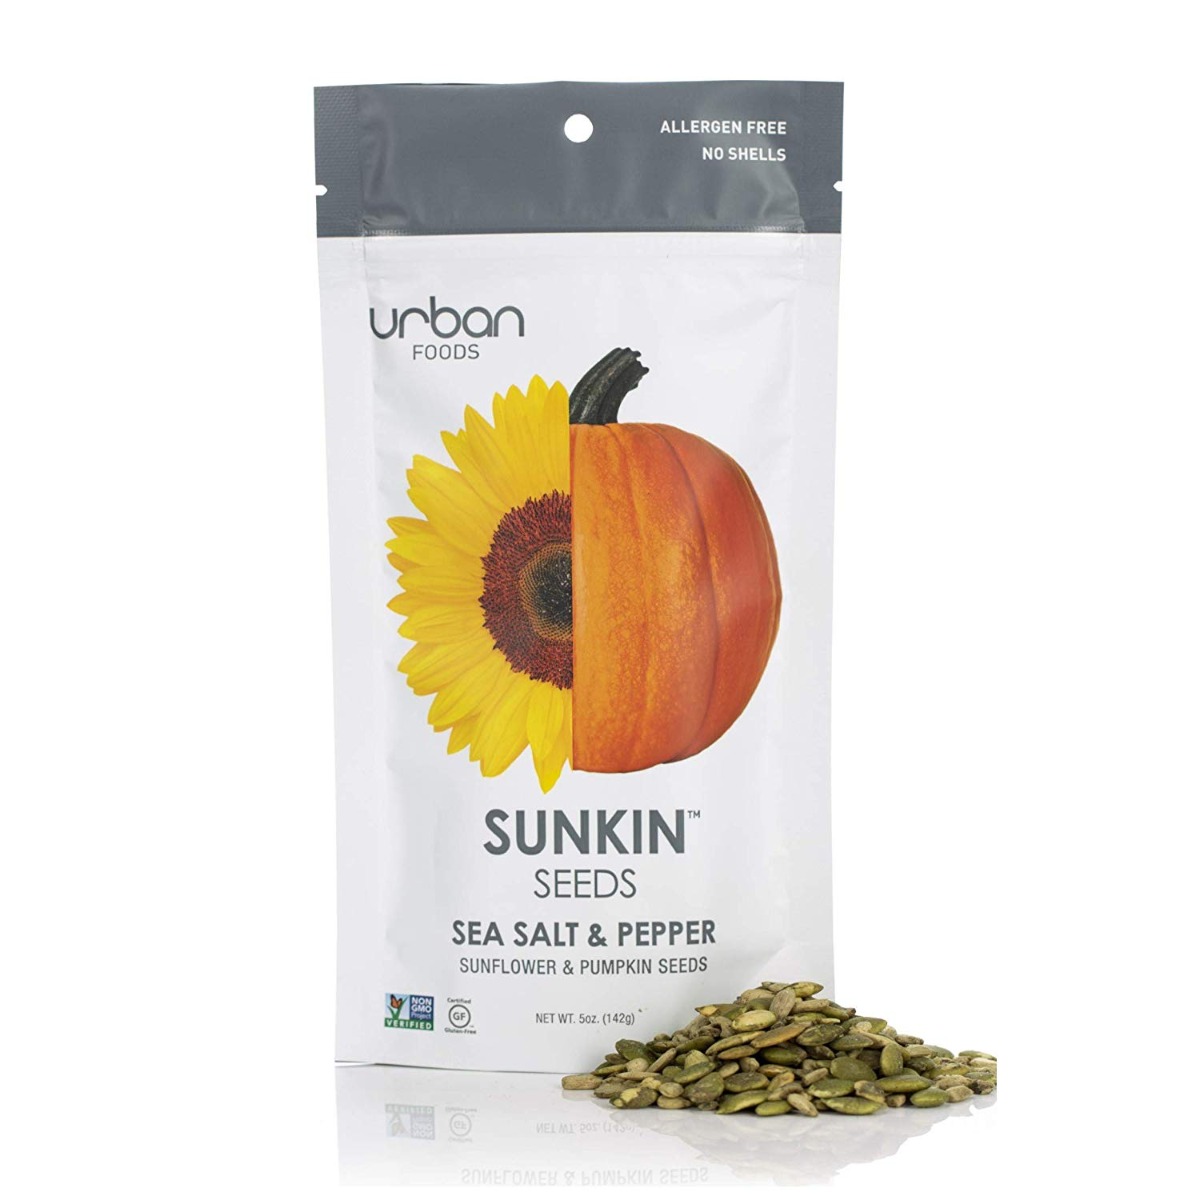 URBAN FOODS: Sea Salt & Pepper Sunflower & Pumpkin Seeds, 5 oz - 0867084000438